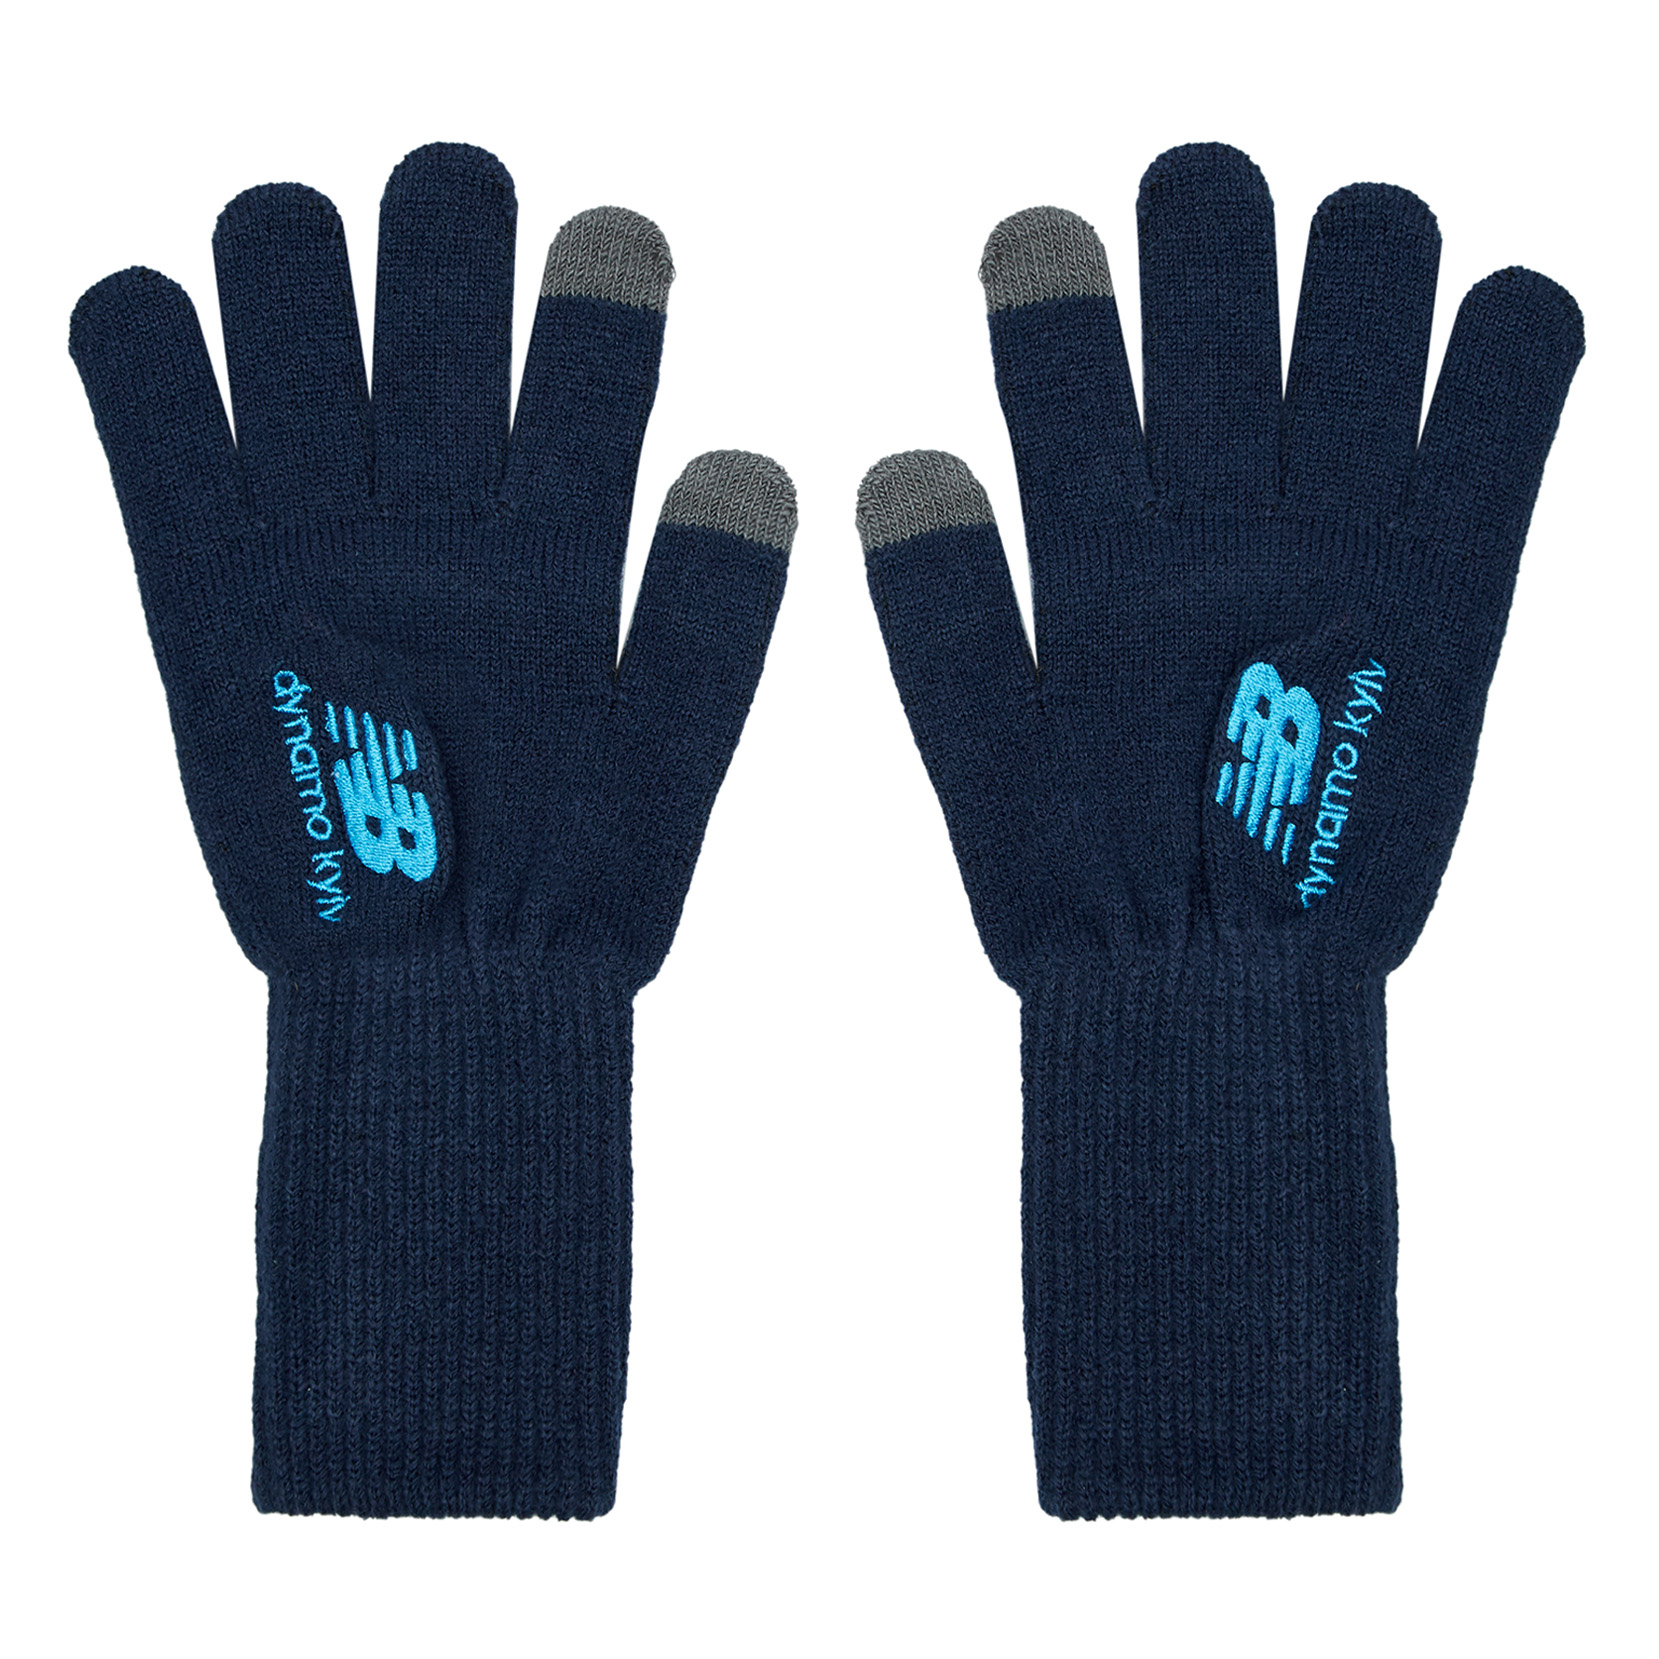 Dynamo Kyiv gloves